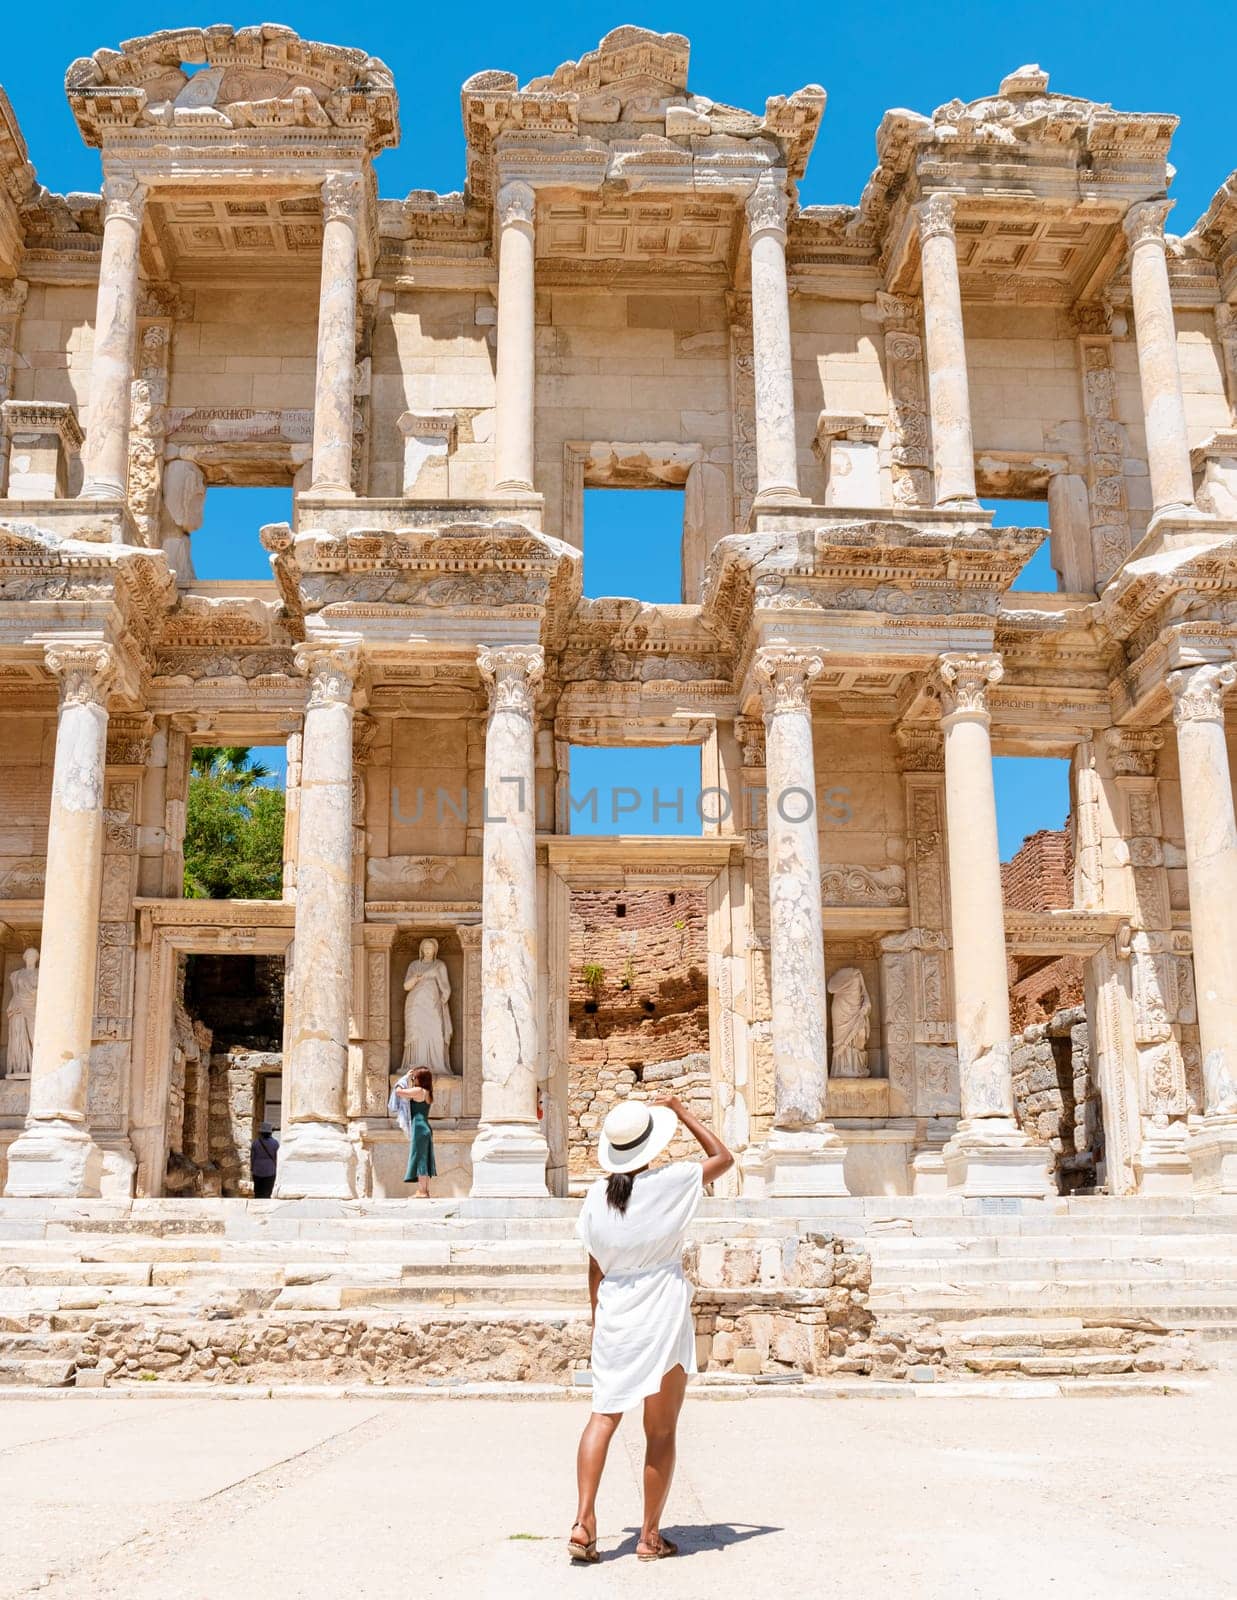 Ephesus ruins, Turkey, beautiful sunny day between the ruins of Ephesus Turkey by fokkebok